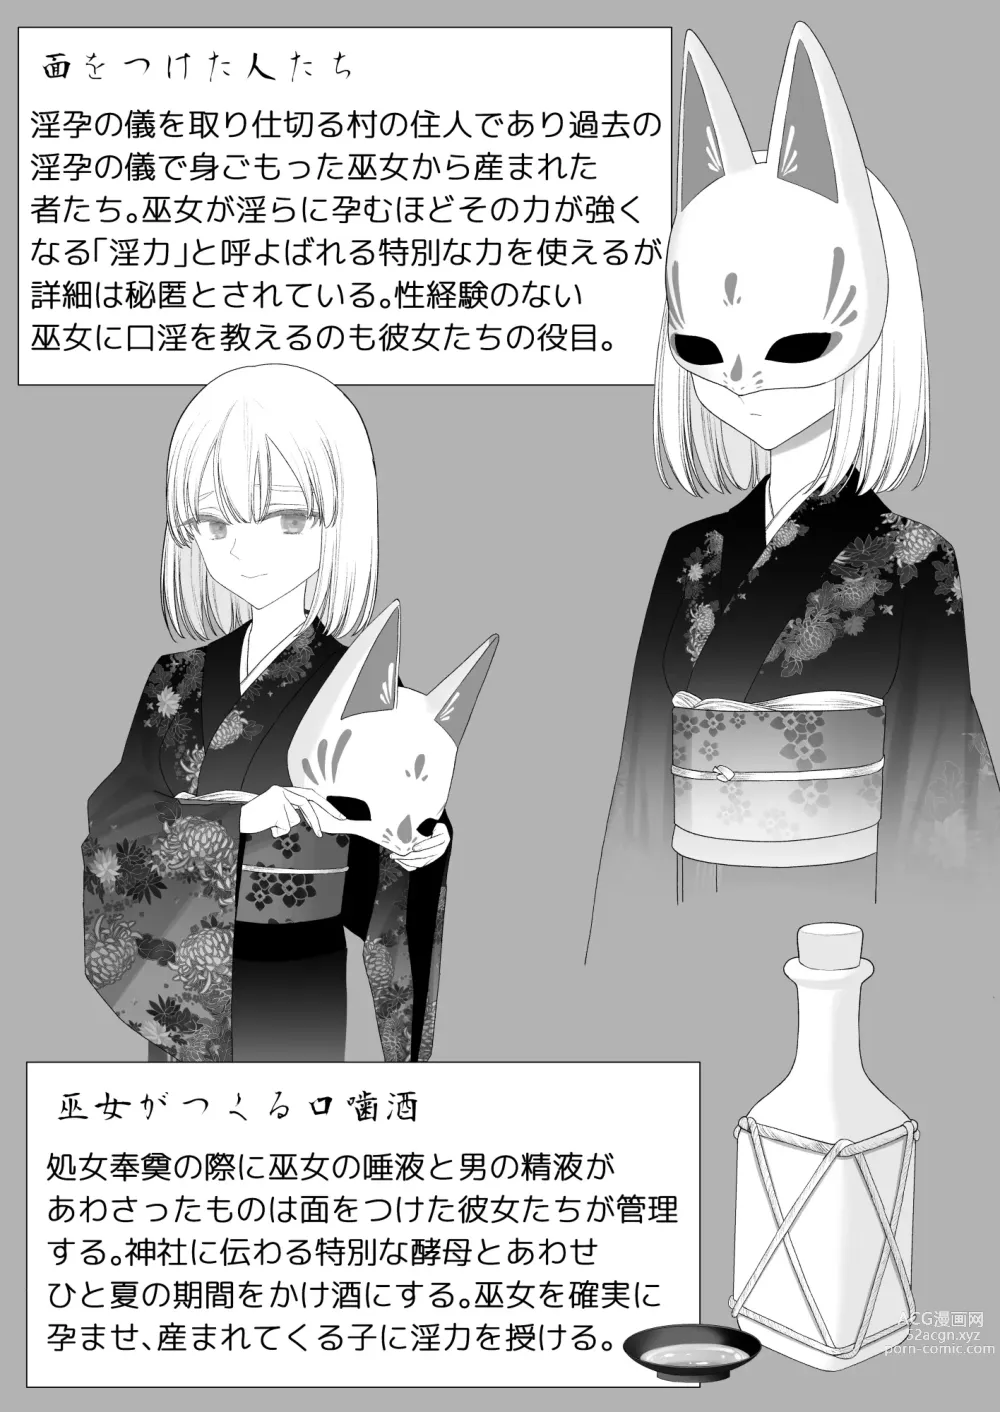 Page 108 of doujinshi Inyou no Gi